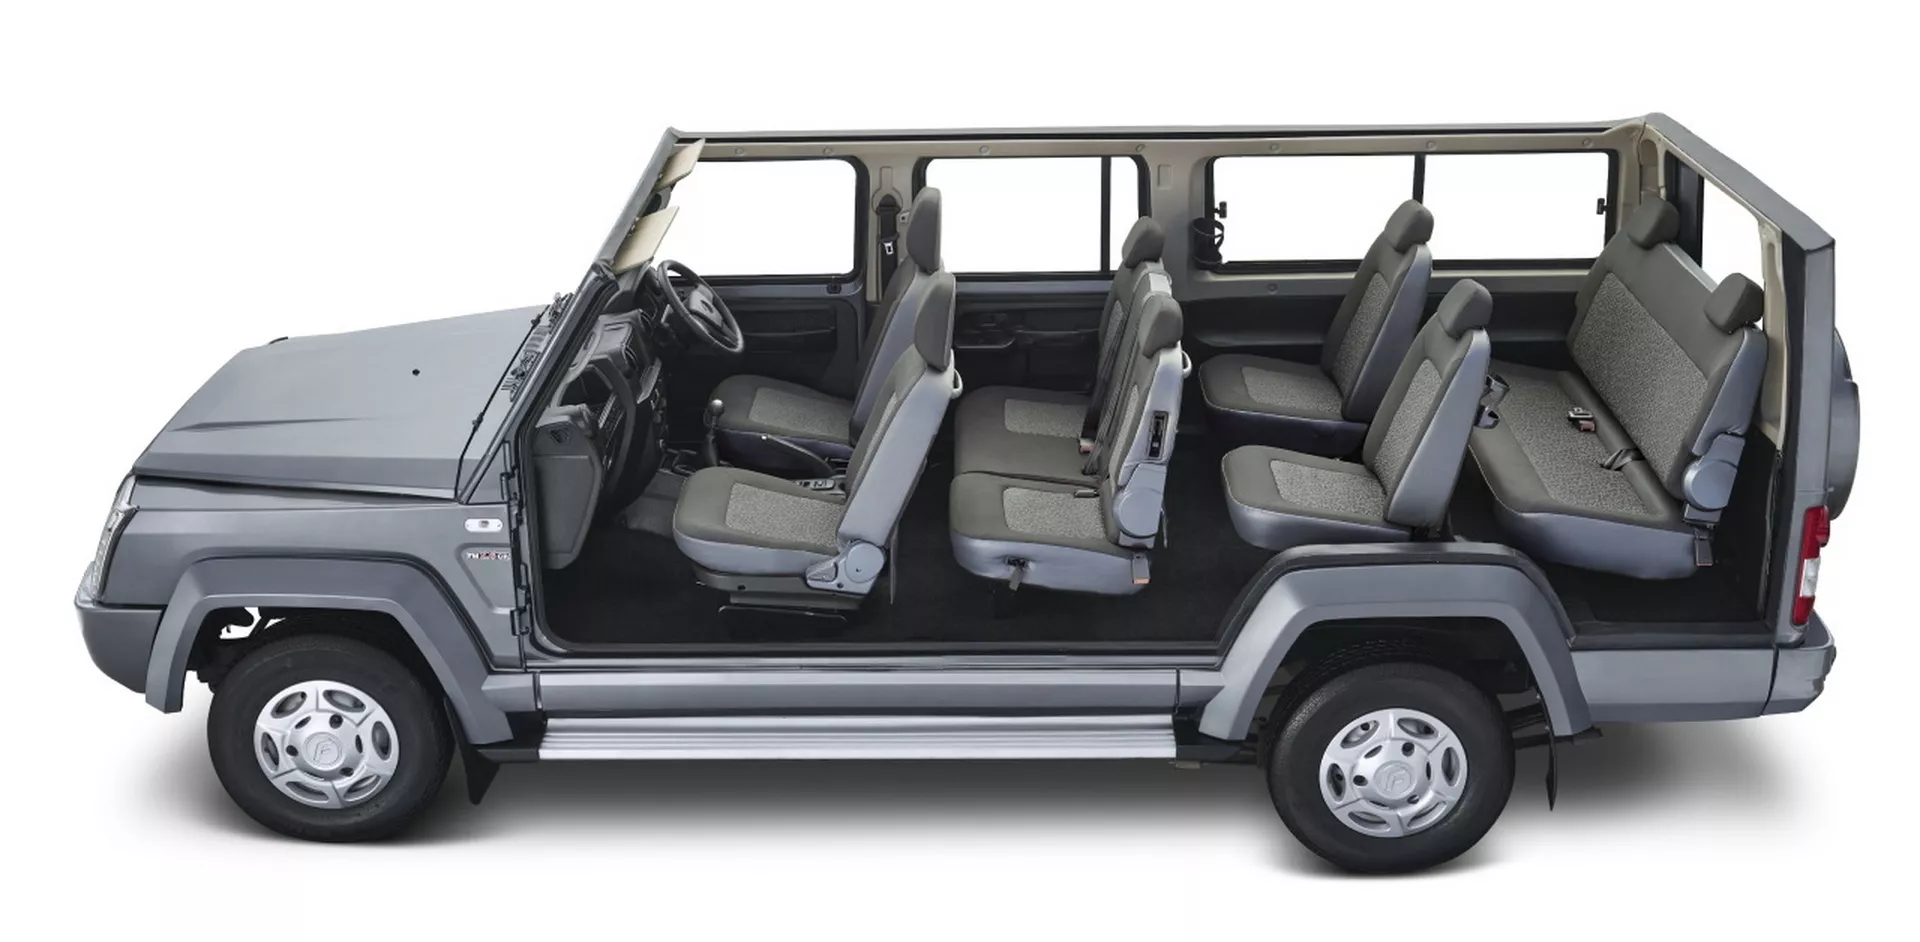 انطلاق SUV هندية عملاقة بـ 10 مقاعد وتصميم مستوحى من سيارات جي كلاس القديمة 9